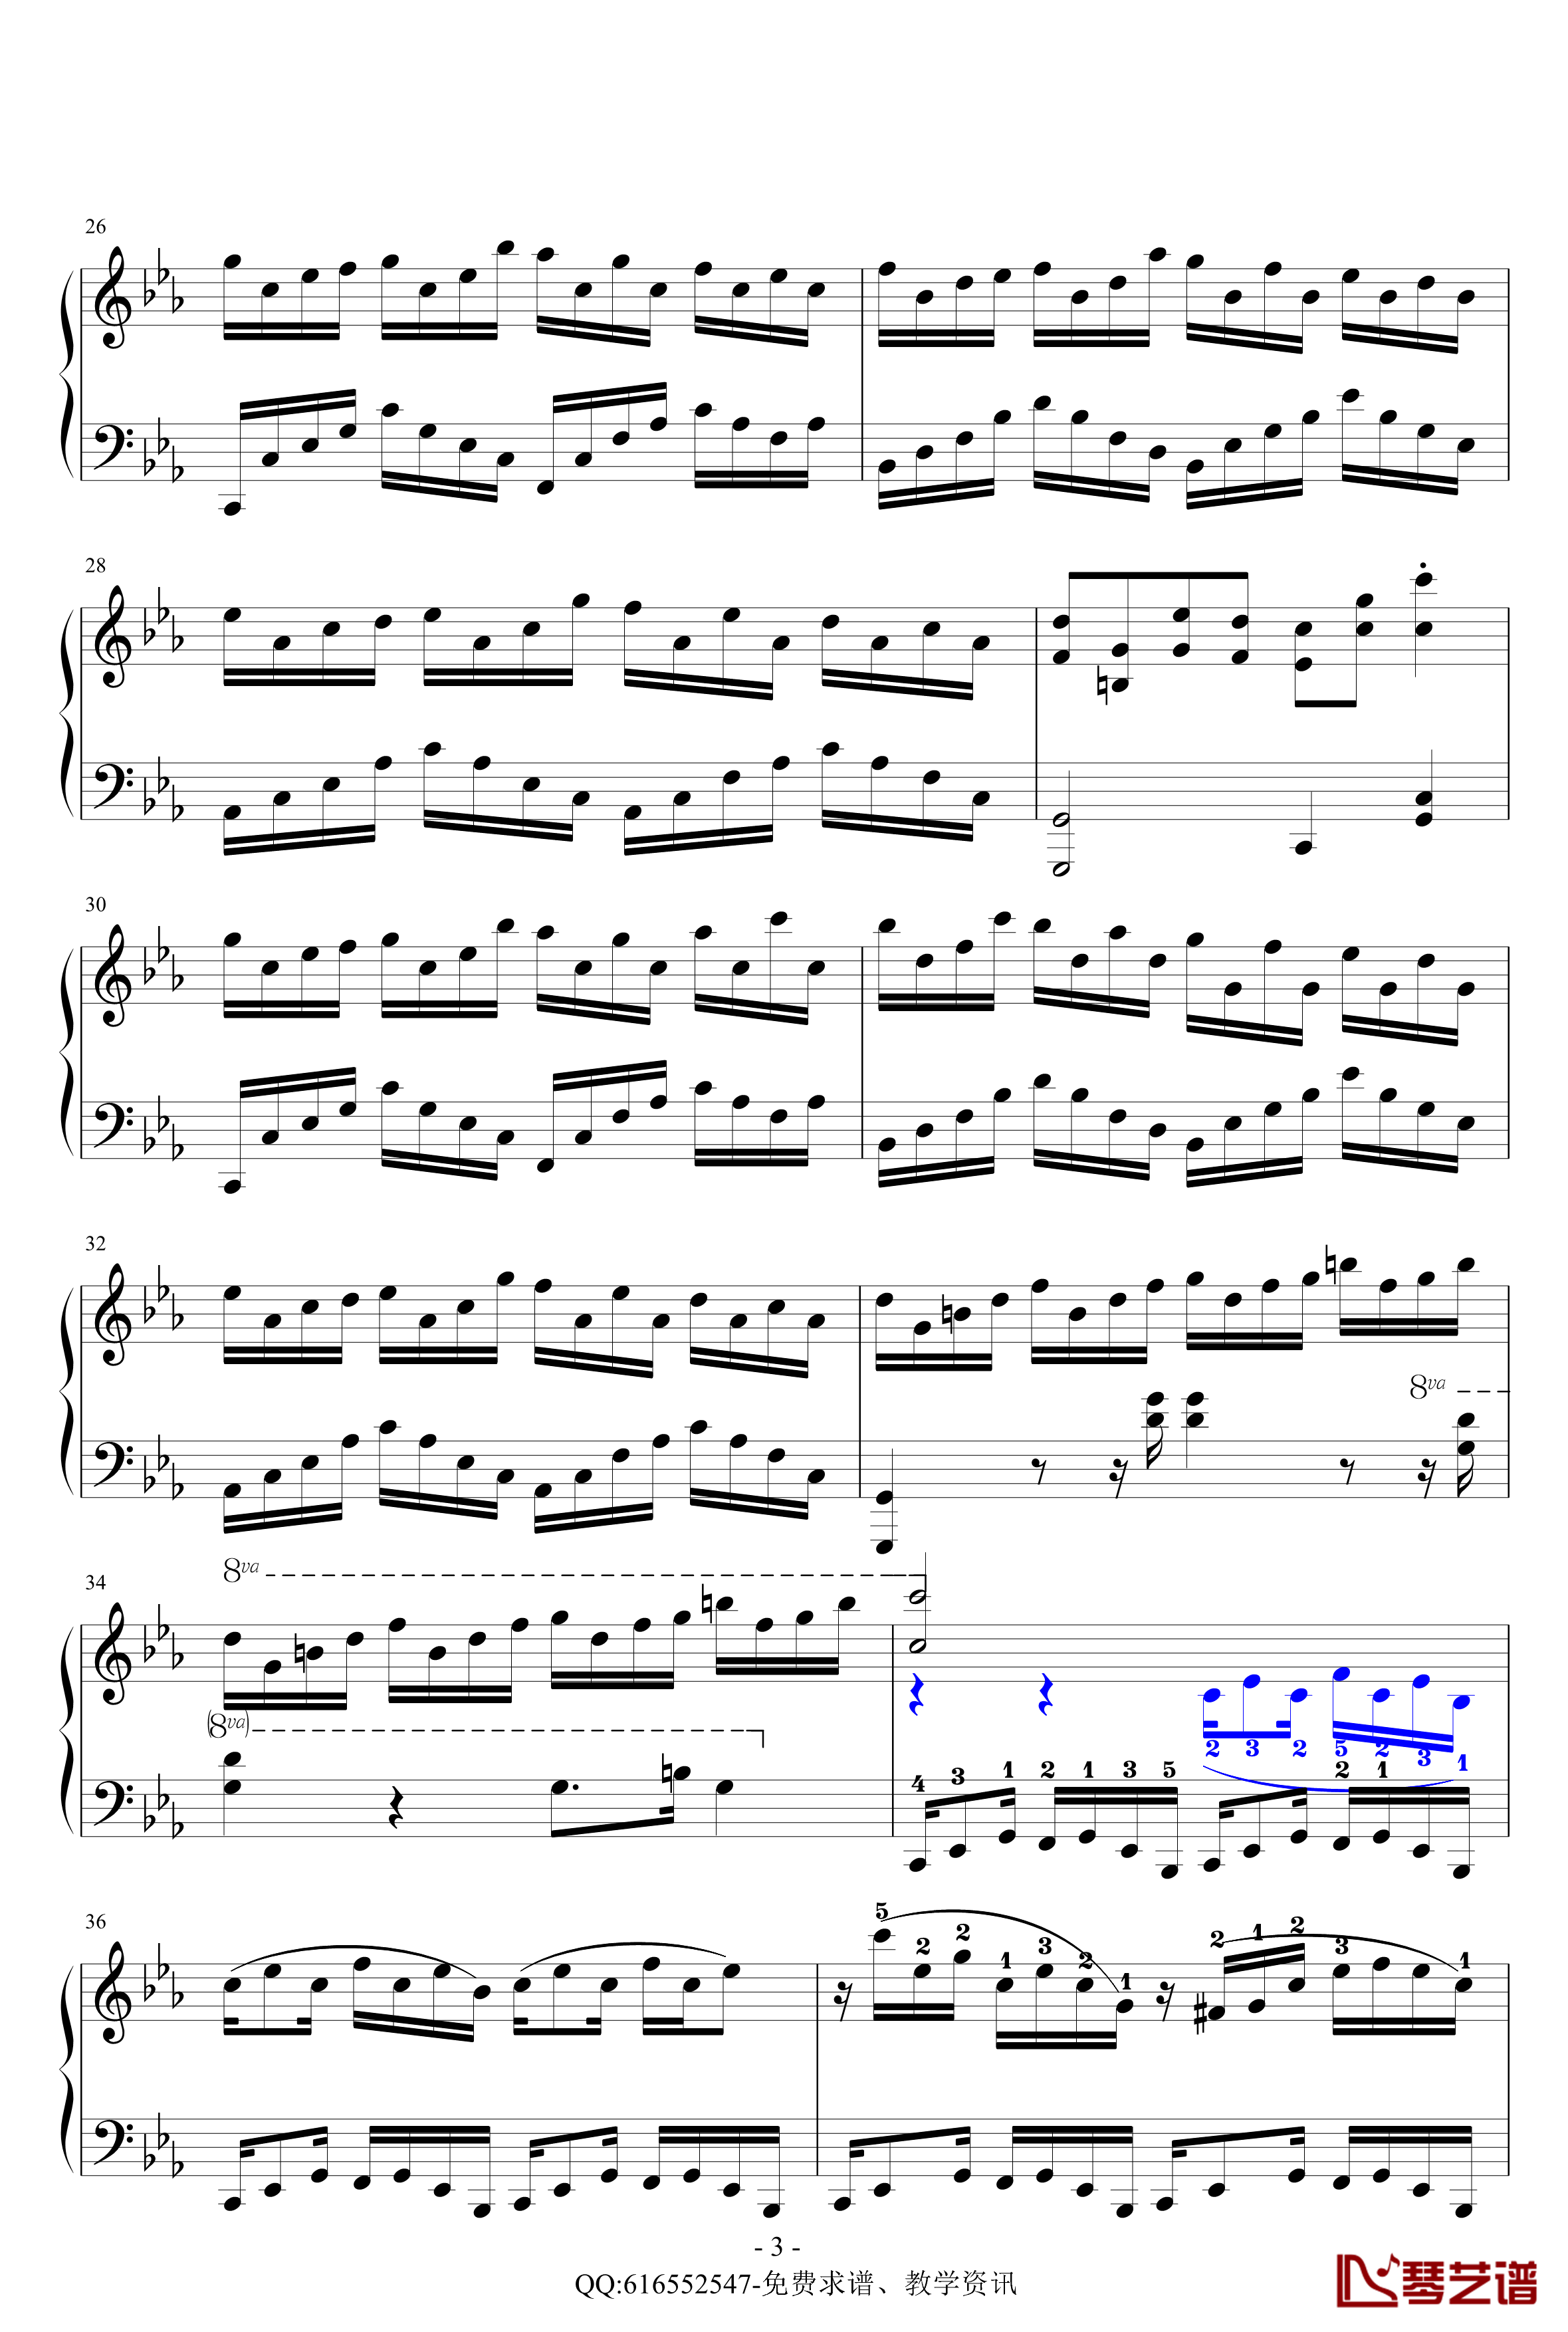 克罗地亚狂想曲钢琴谱-简化版-金龙鱼170427-马克西姆-Maksim·Mrvica3